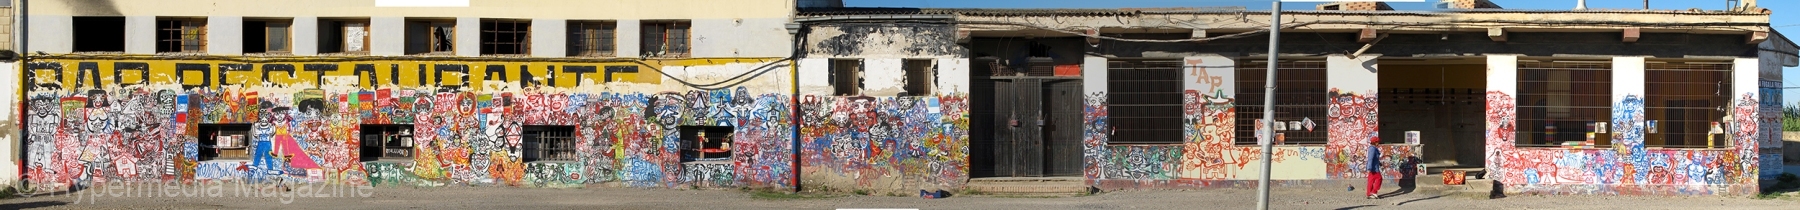 Murales, fachada de edificio, 2010